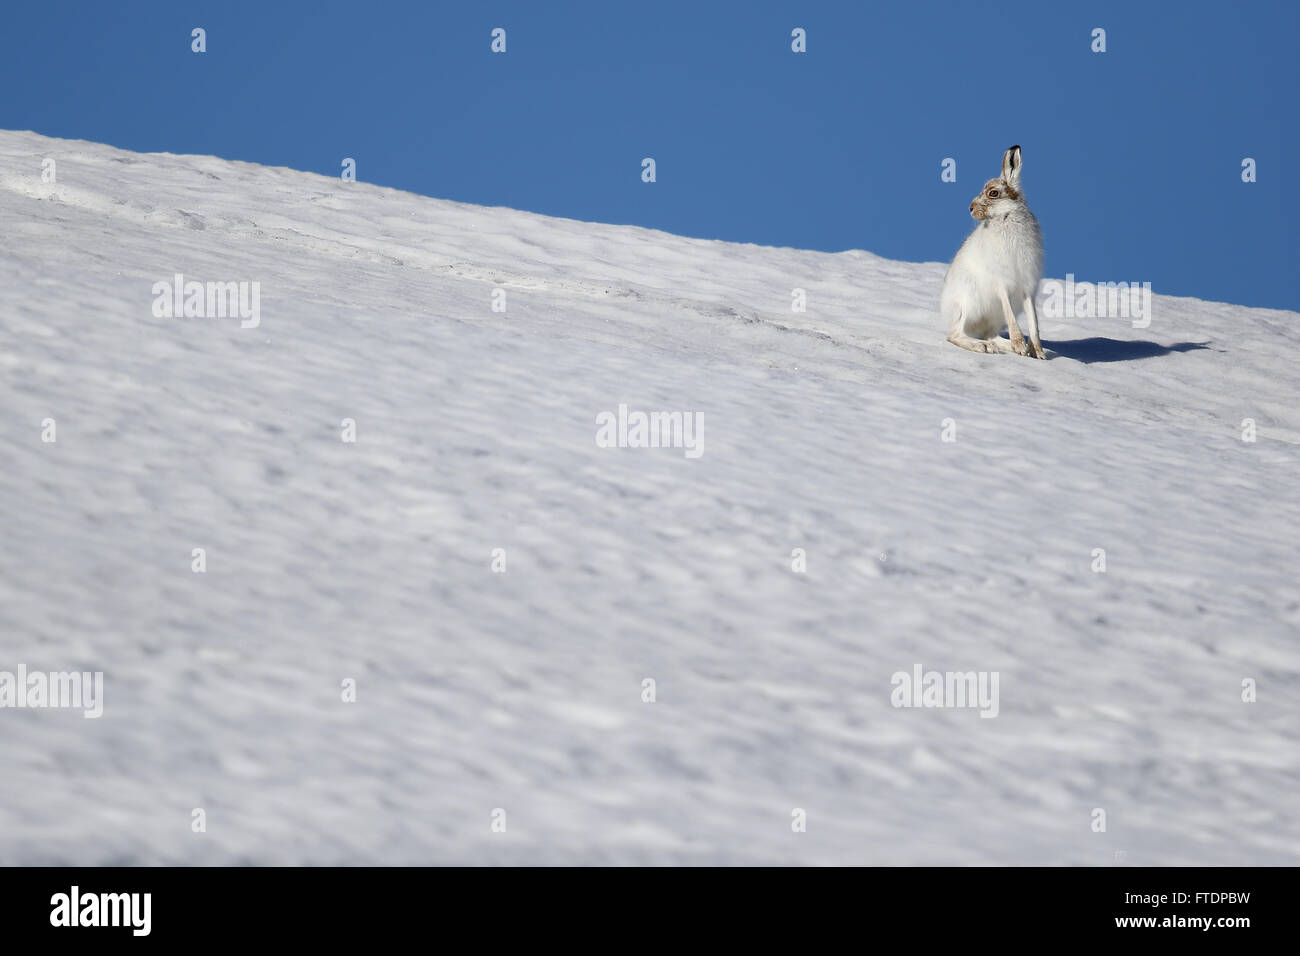 Le Lièvre variable (Lepus timidus), connue aussi sous le nom de hare. Ici vu sur une montagne écossaise dans la neige Banque D'Images